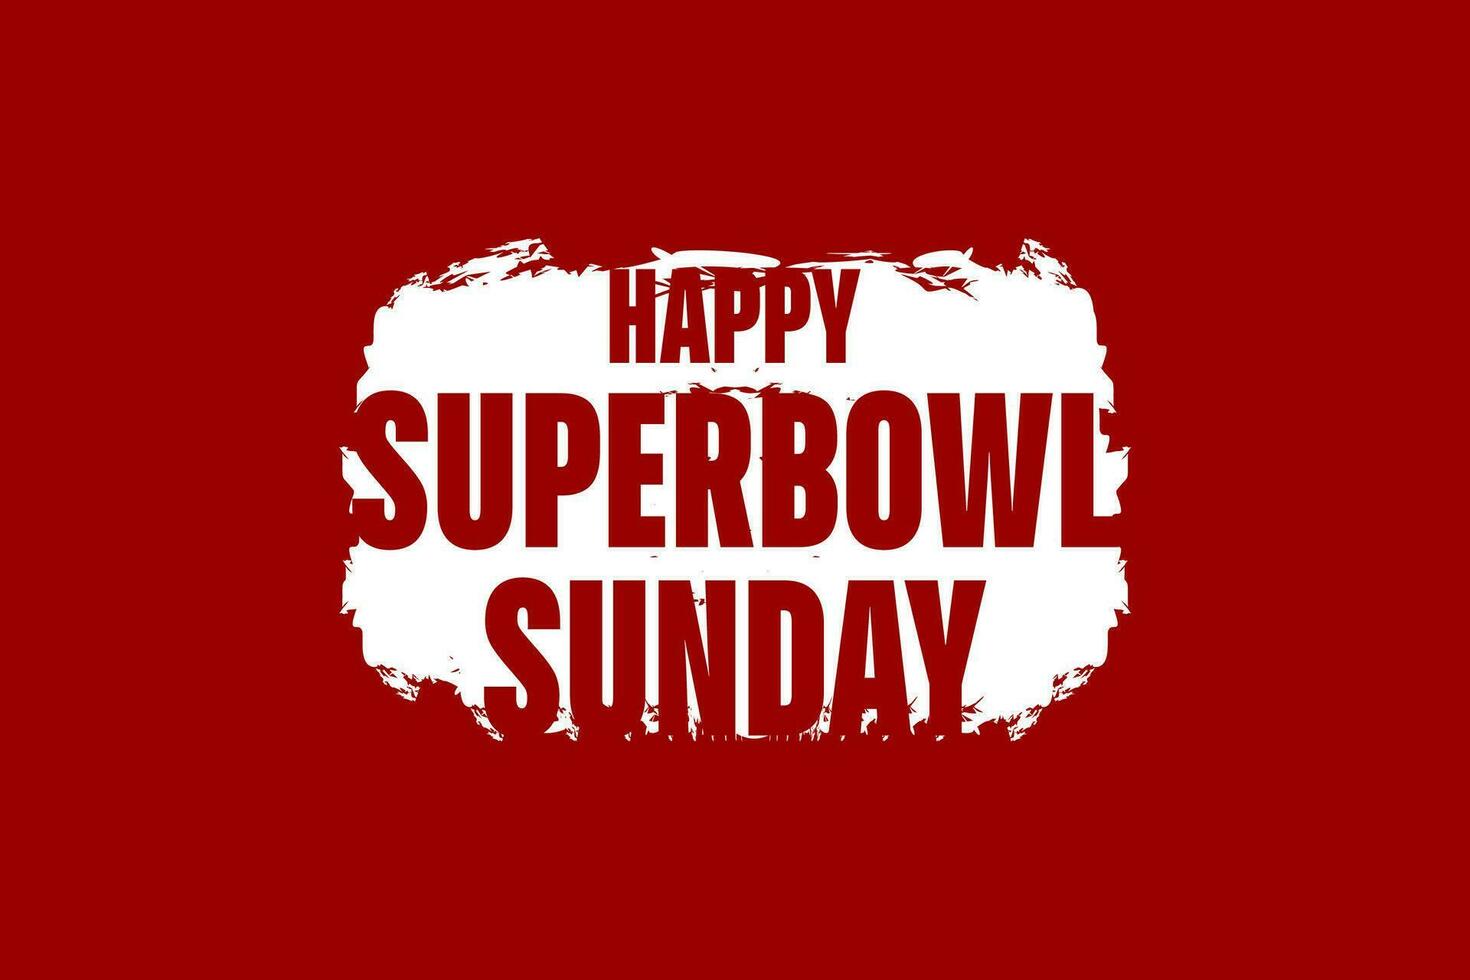 content super Bowl dimanche, super bol vecteur